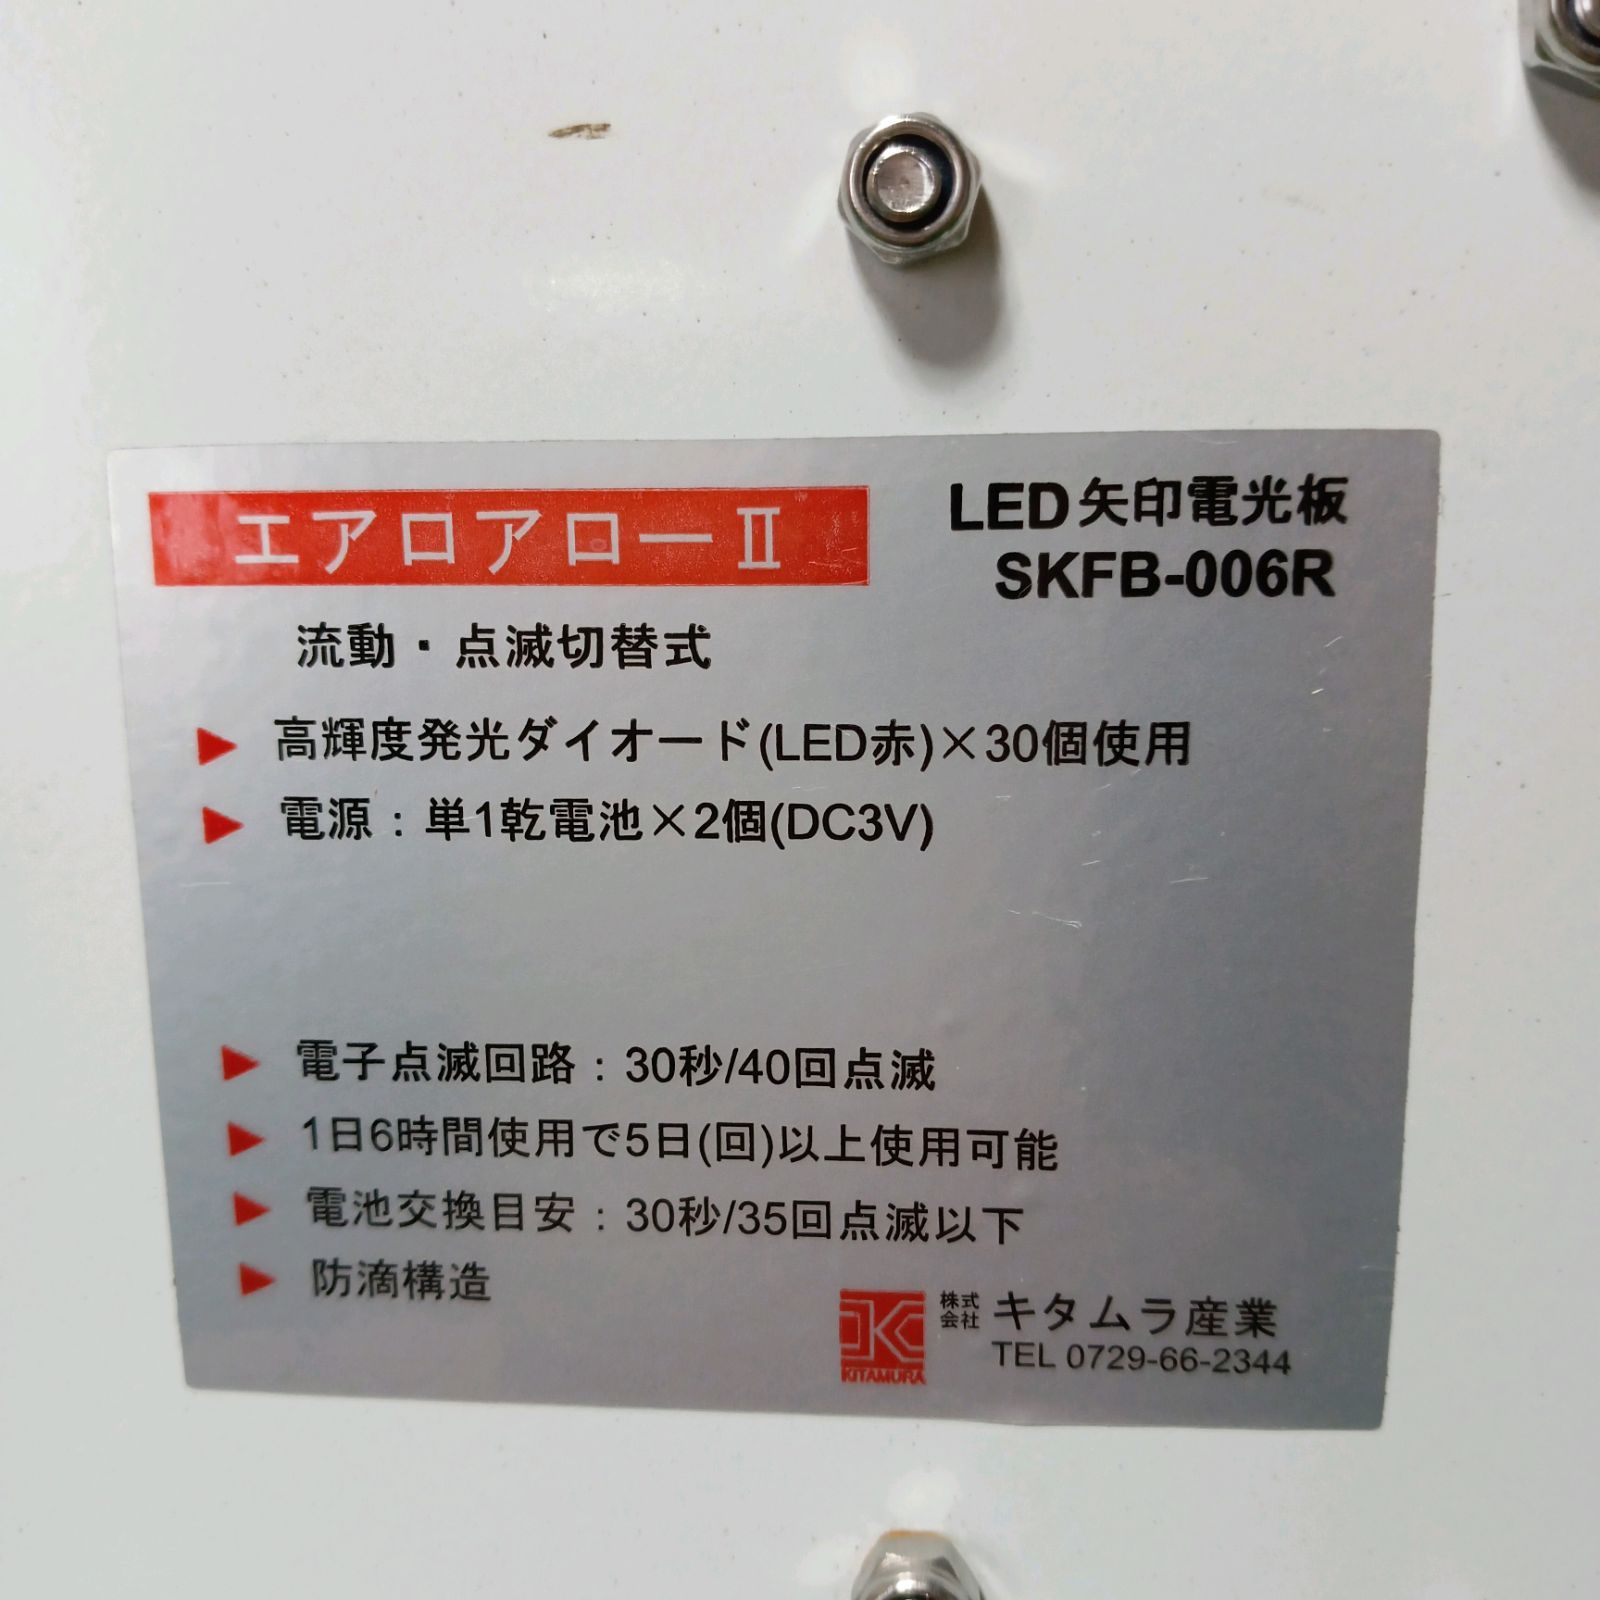 キタムラエアロアローⅡ LED矢印電光板SKFB-006R 機械工具SHOP メルカリ